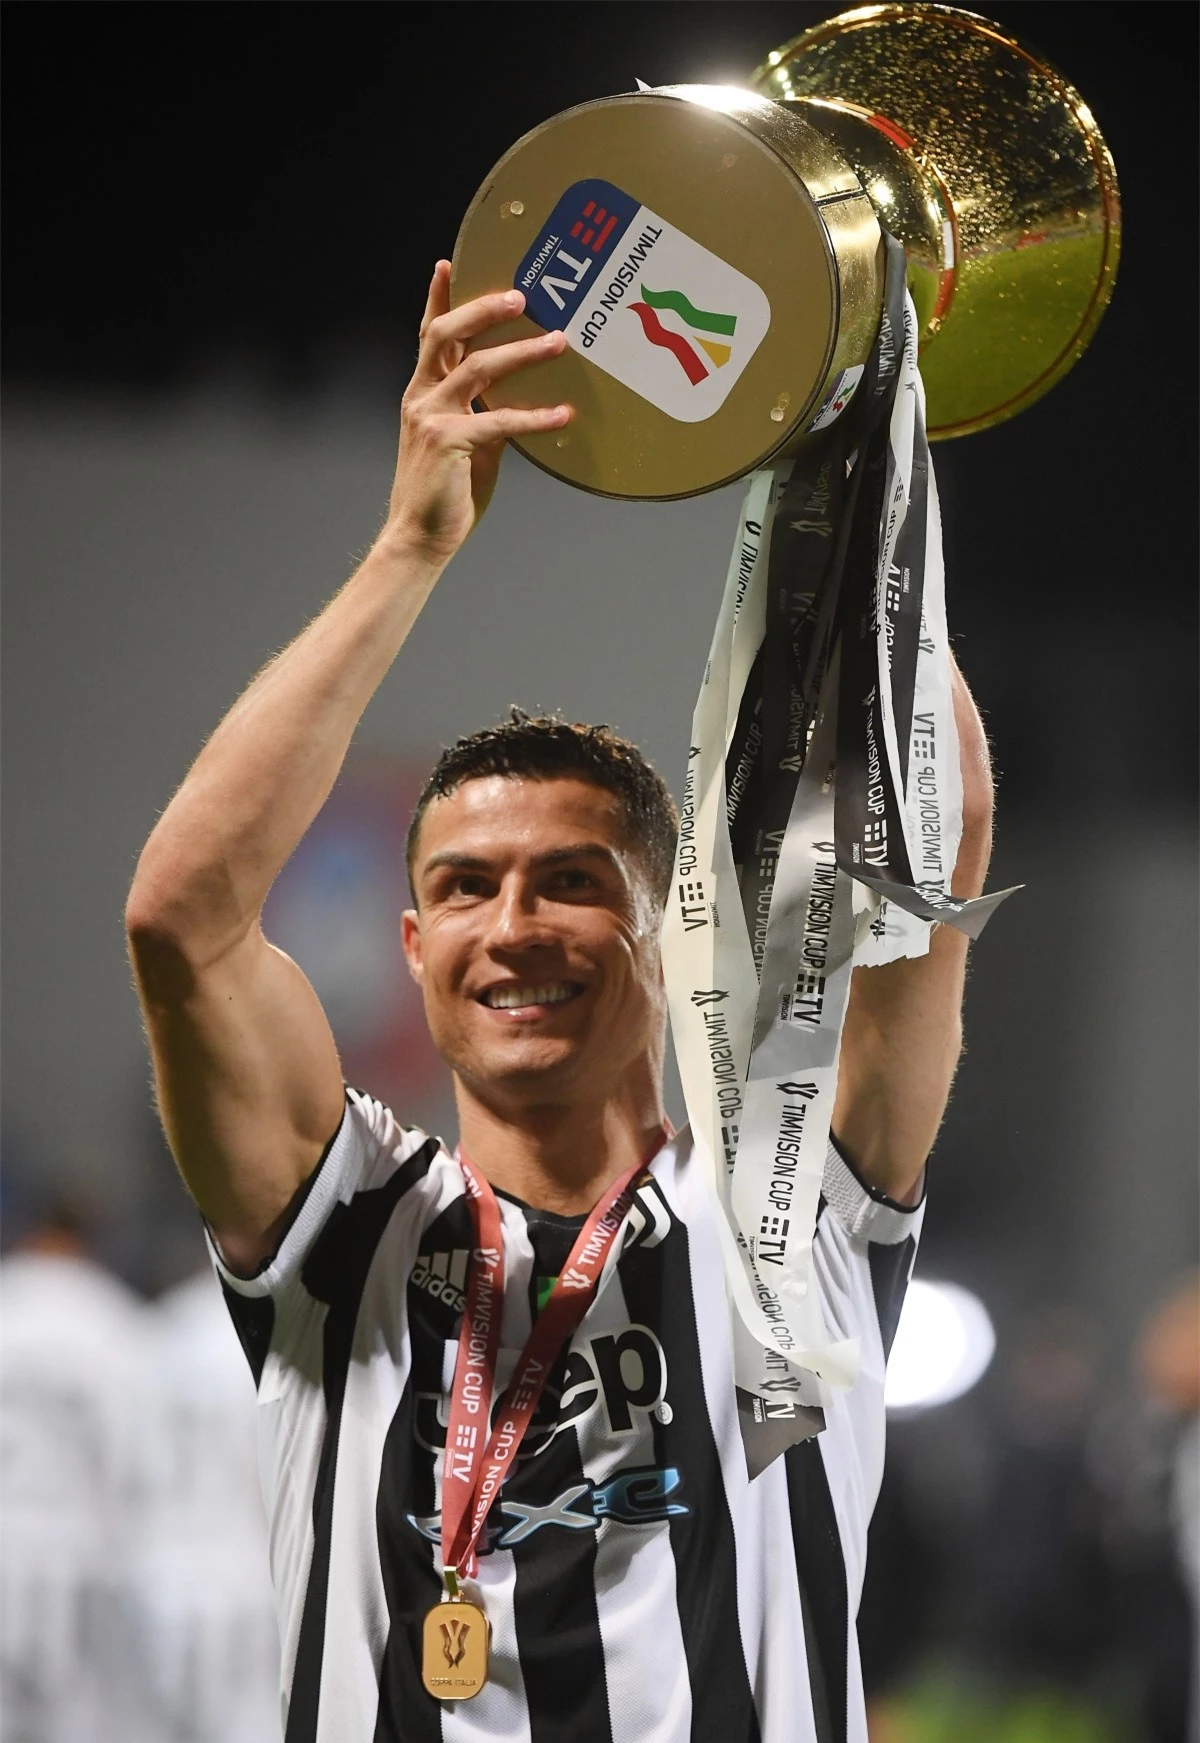 Ronaldo lần đầu giành vua phá lưới Serie A với 29 bàn thắng. CR7 đi vào lịch sử bóng đá thế giới với tư cách là cầu thủ giành giải vua phá lưới ở 3 giải đấu hàng đầu châu Âu là Ngoại hạng Anh (với MU năm 2008), La Liga (với Real Madrid 2011, 2014 và 2015) và Juventus (Ảnh: Reuters).